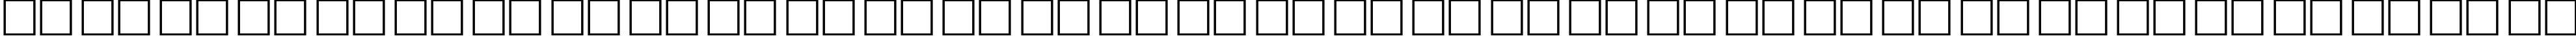 Пример написания русского алфавита шрифтом Arsis-Regular